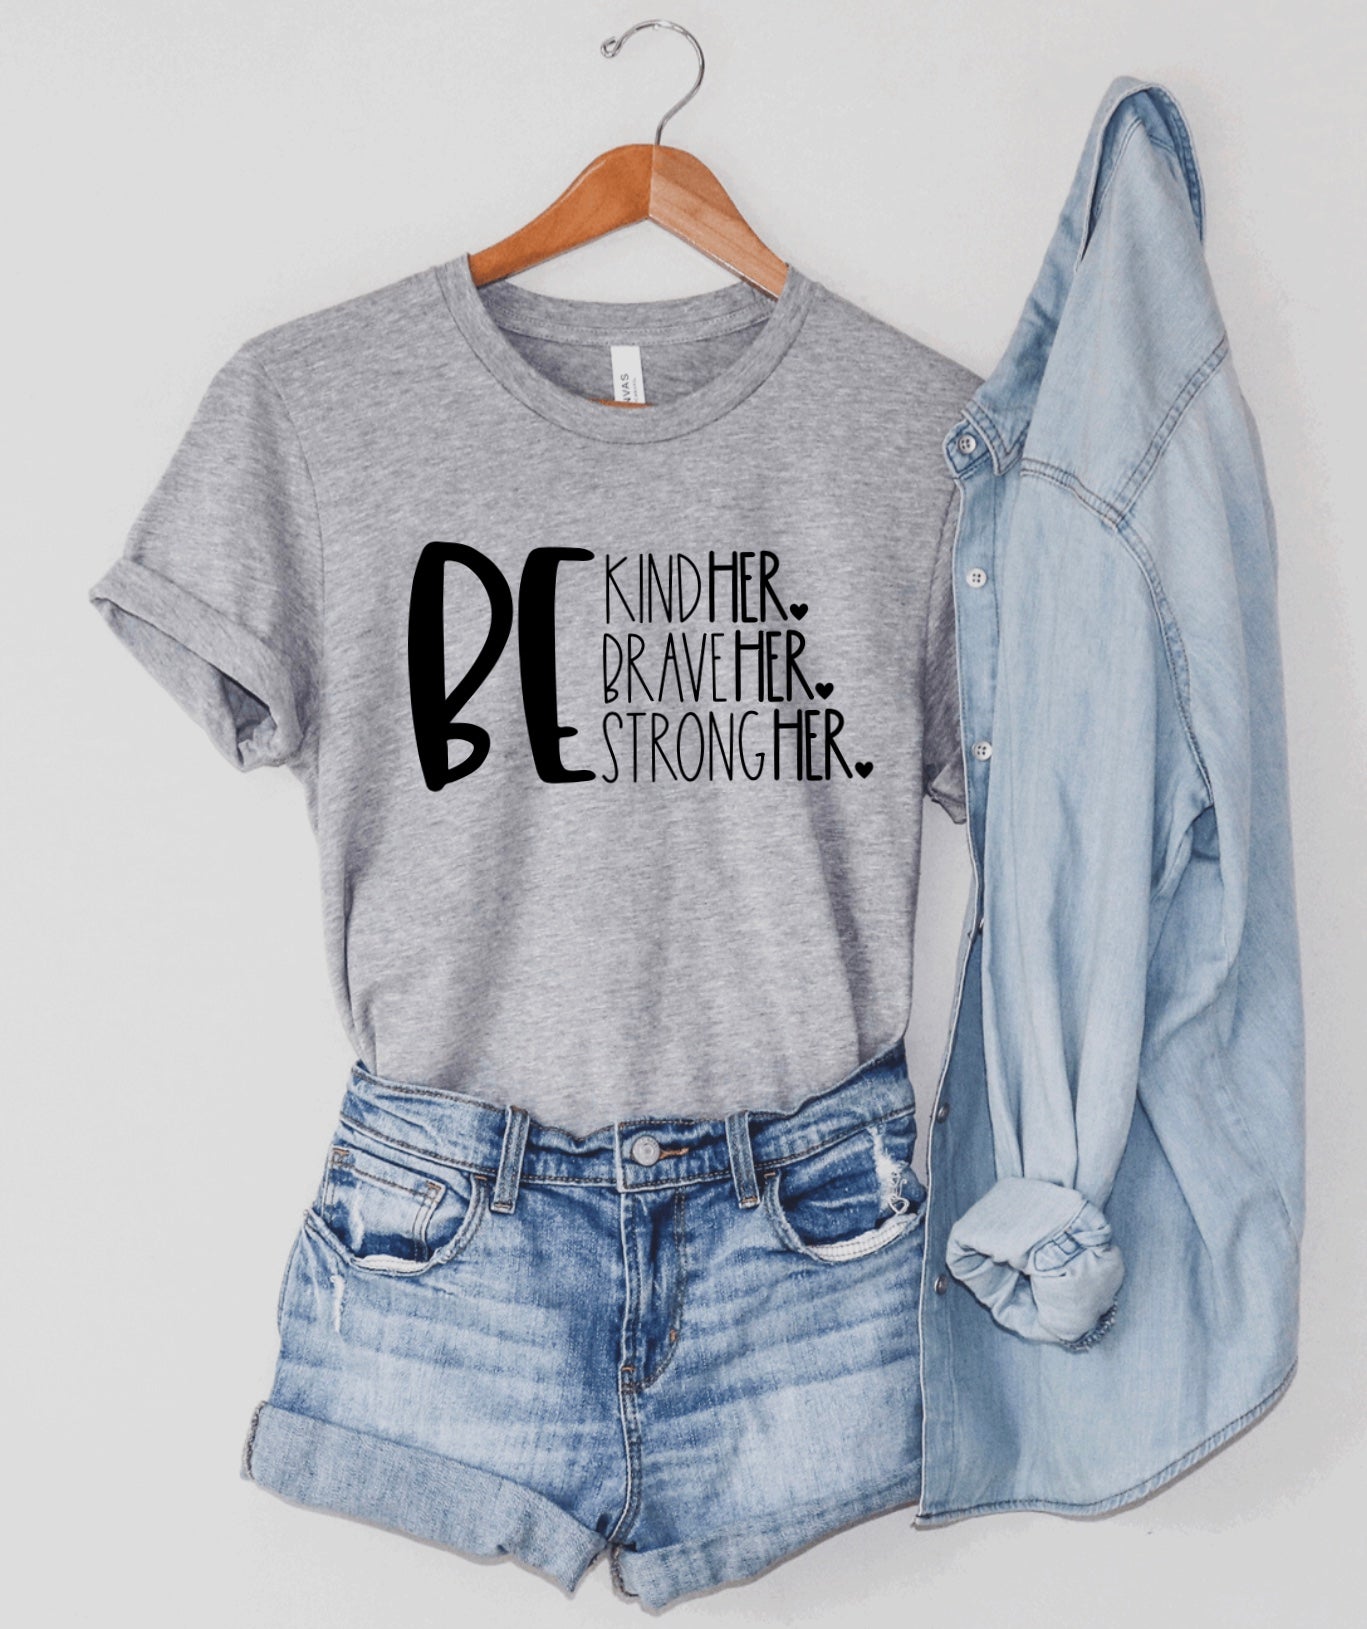 Be kinder braver stronger t-shirt 